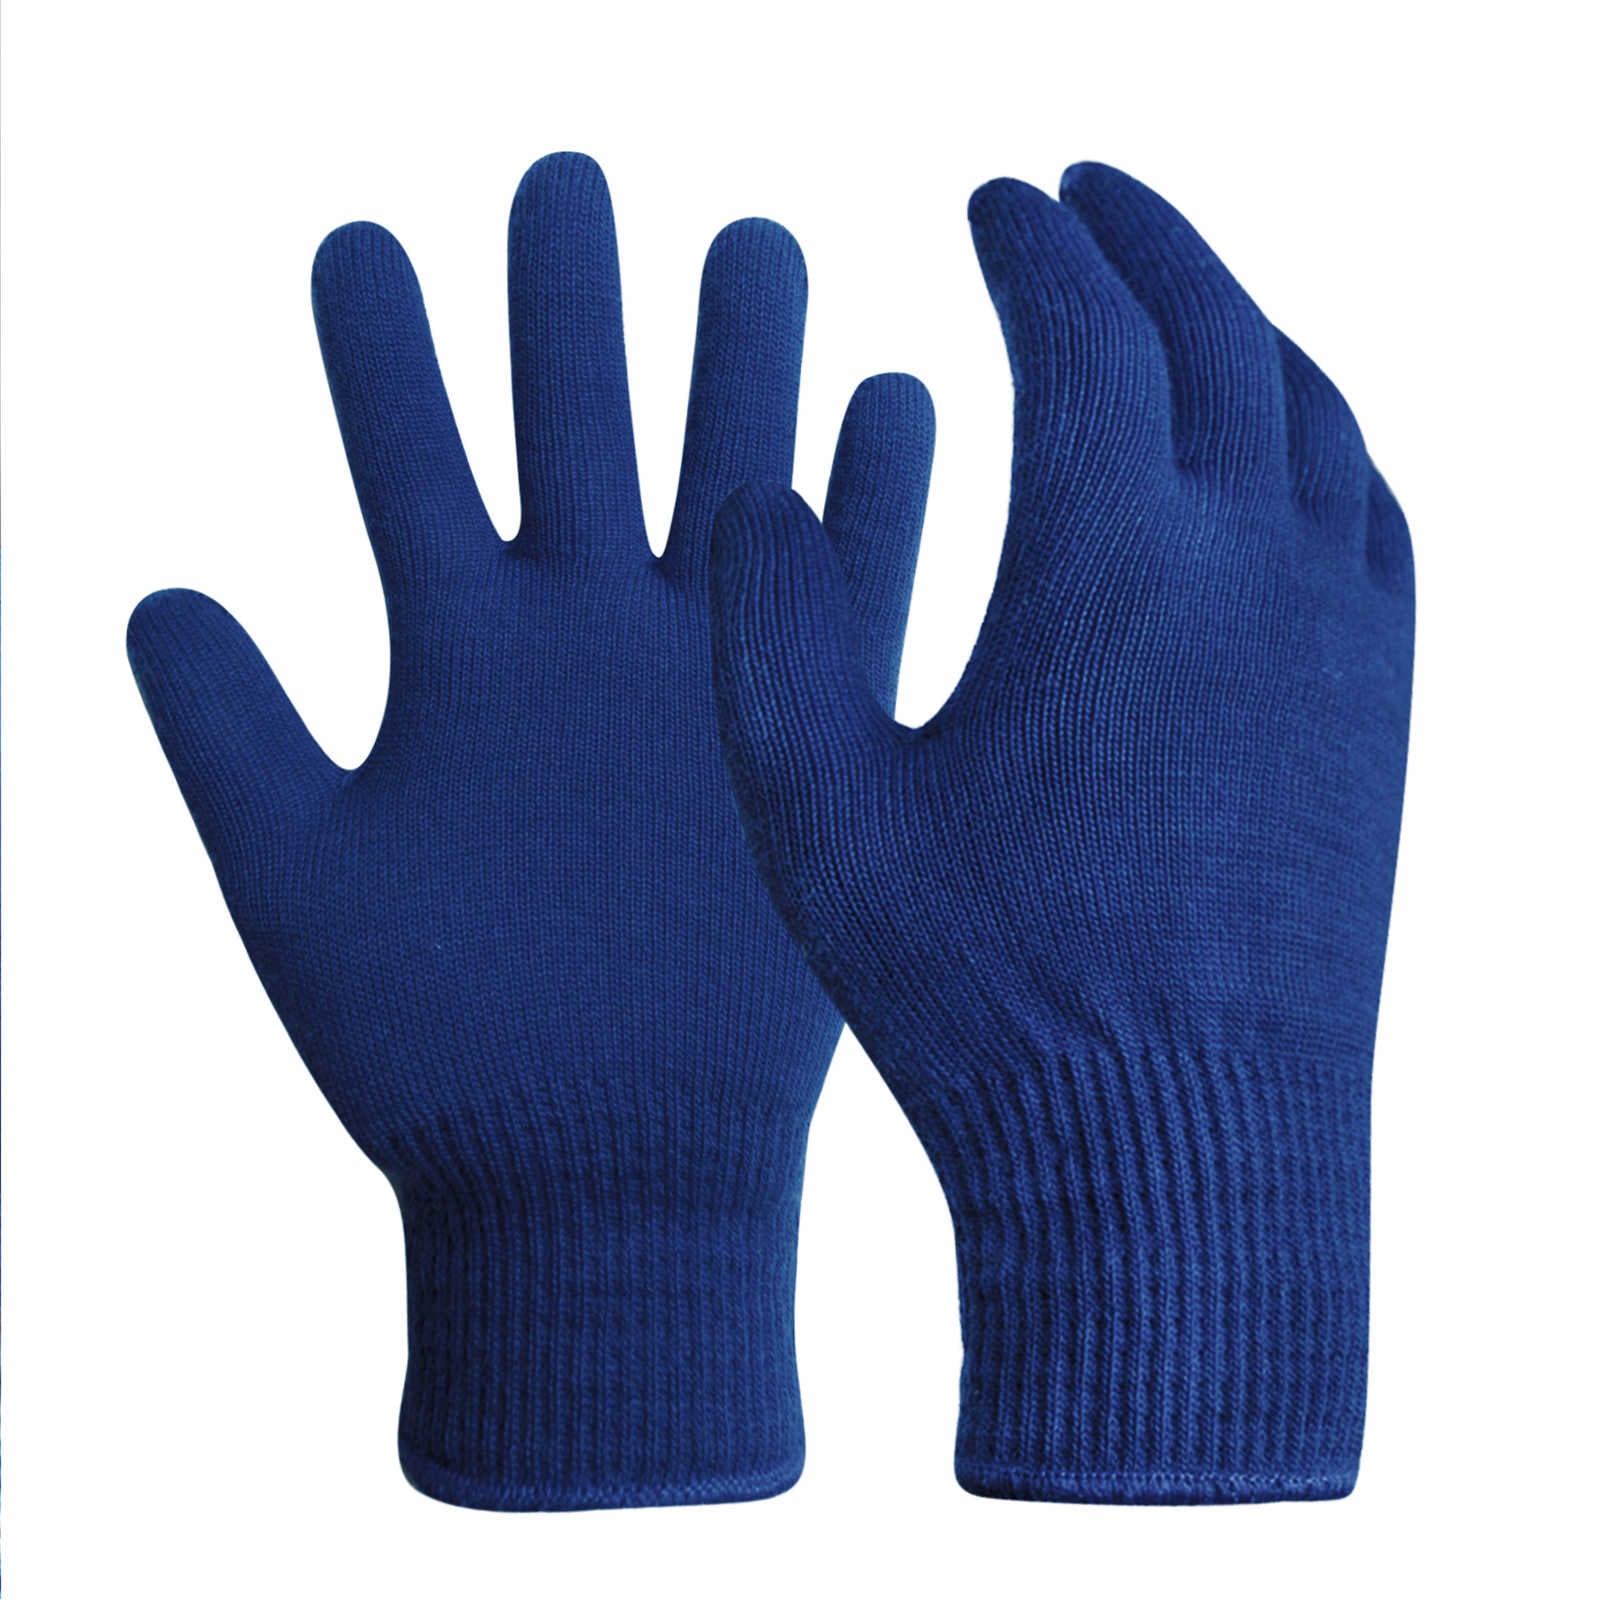 Evridwear 1 Pair Merino Wool String Knit Liner Full Finger Gloves, Men Women (Navy) Small